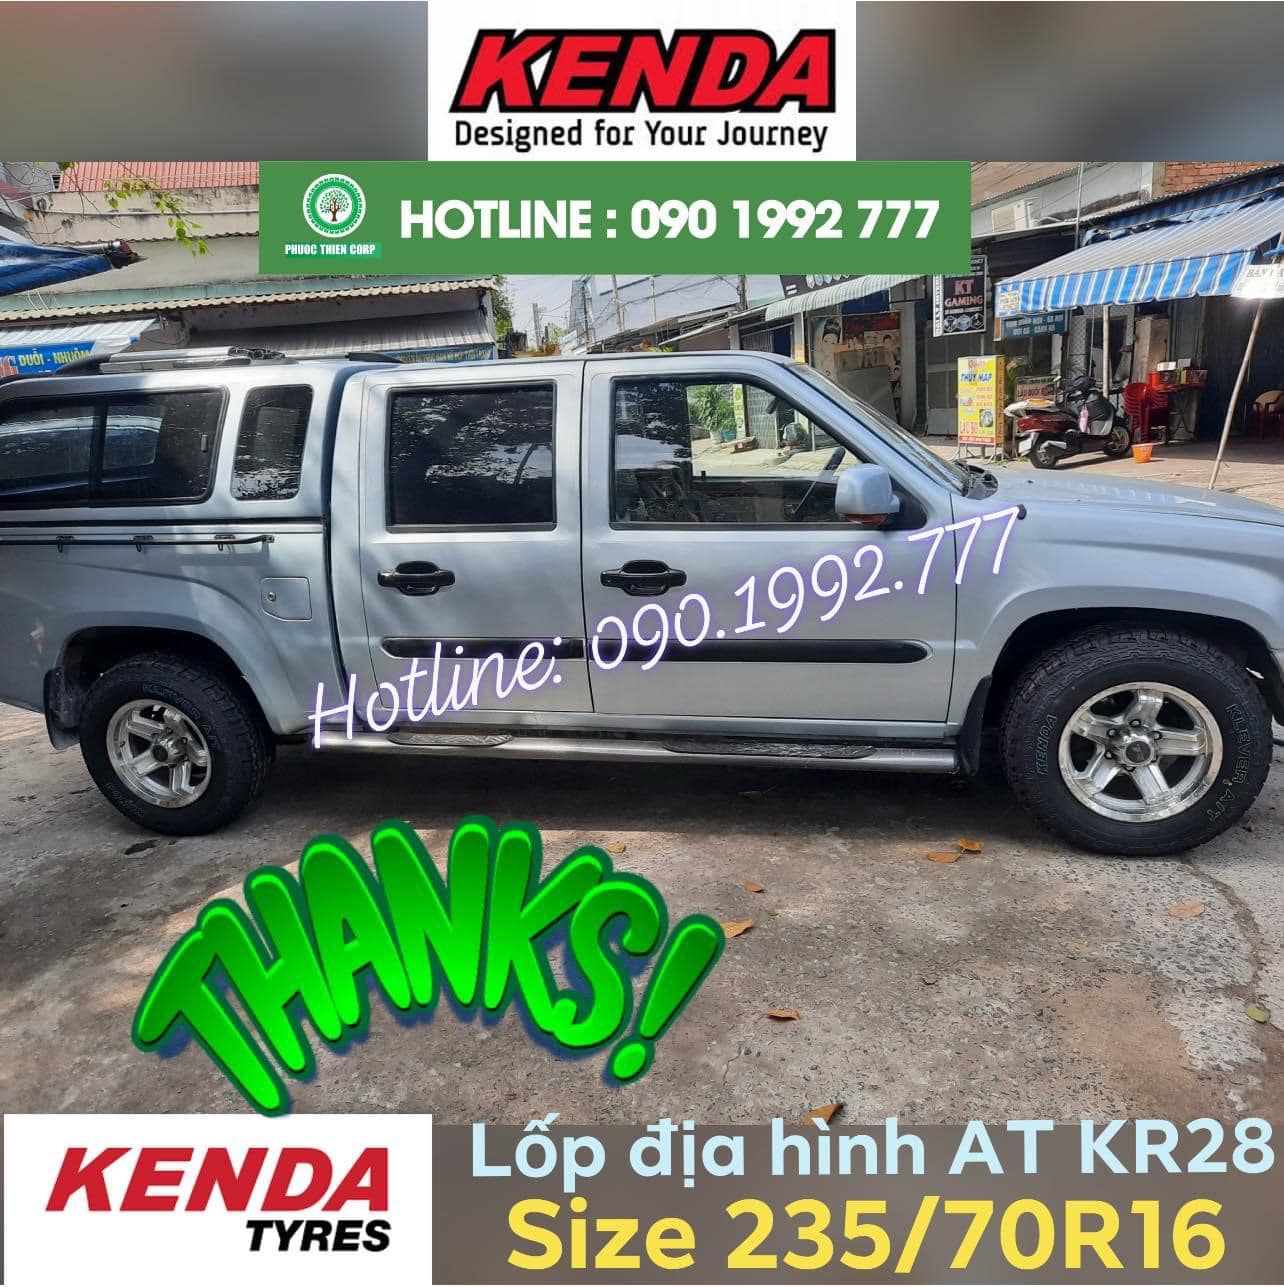 Review : Độ lốp offroad 235/70R16 Kenda KR28 (AT) cho xe bán tải Mekong PMC